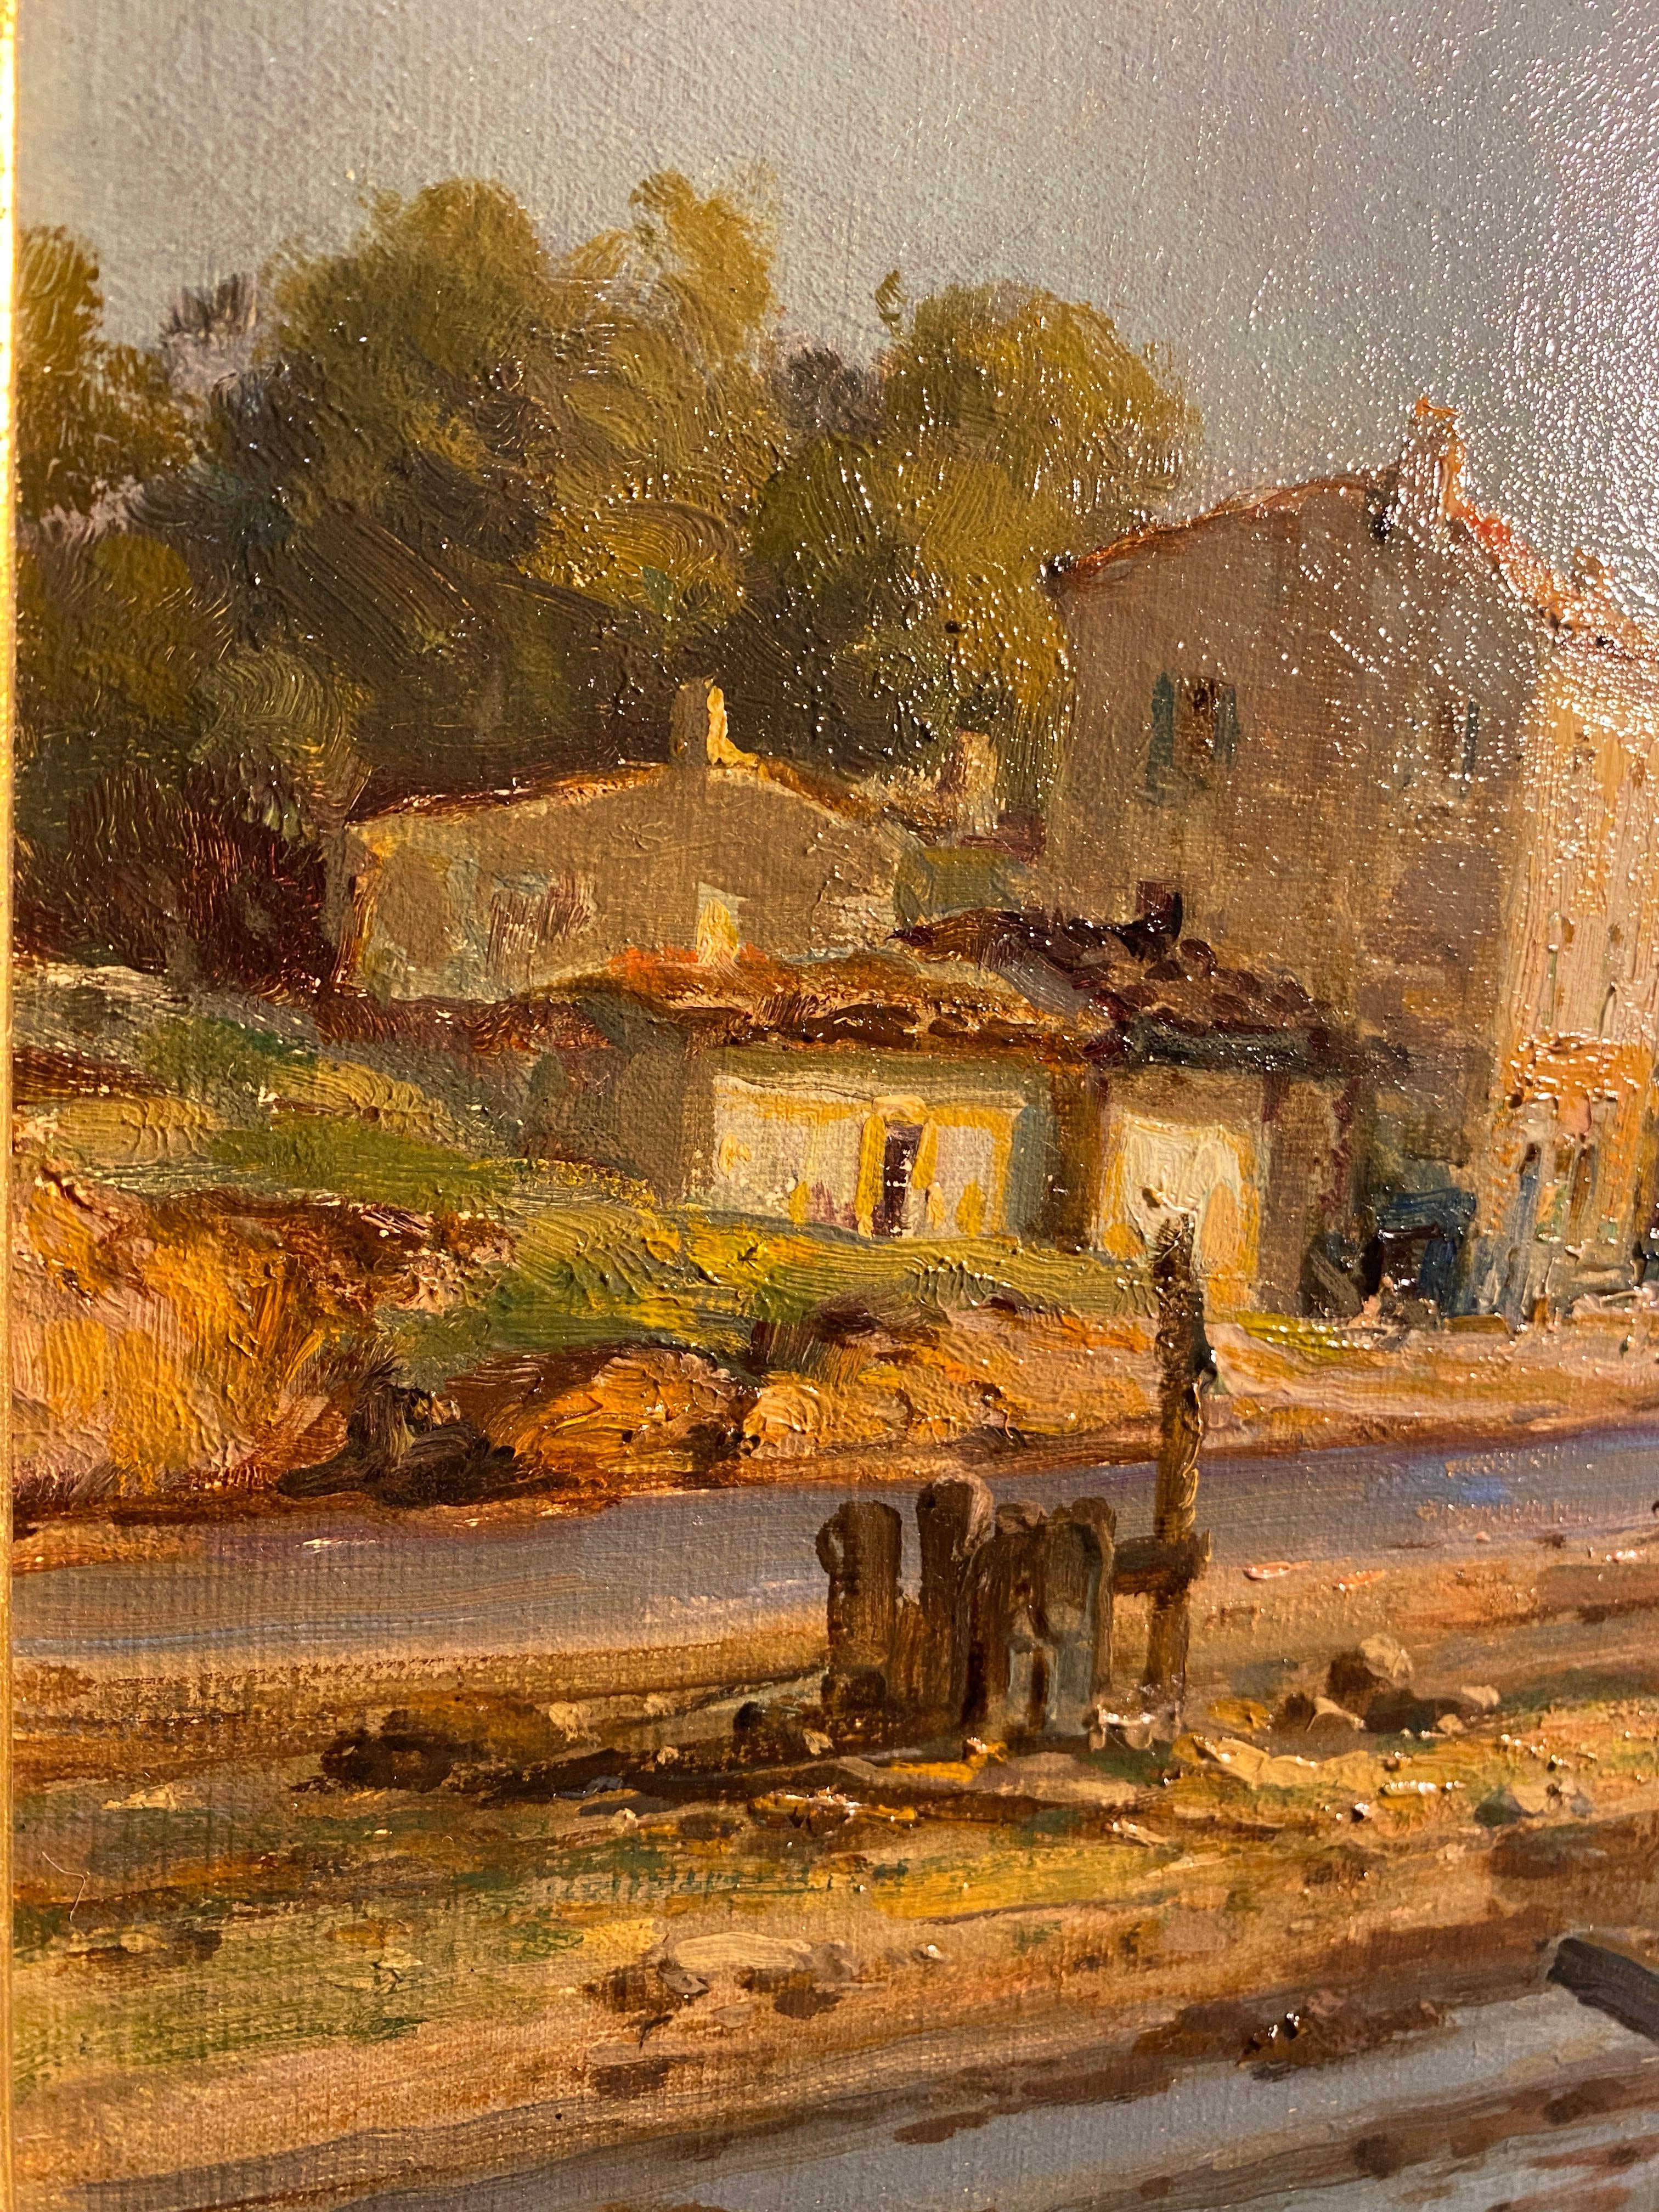 Merveilleux tableau, huile sur toile, représentant la vue d'un village de pêcheurs, probablement en Provence. Le style de peinture se rapproche du mouvement Impressionniste, les couleurs sont absolument merveilleuses.
Son cadre, de style Louis XV,